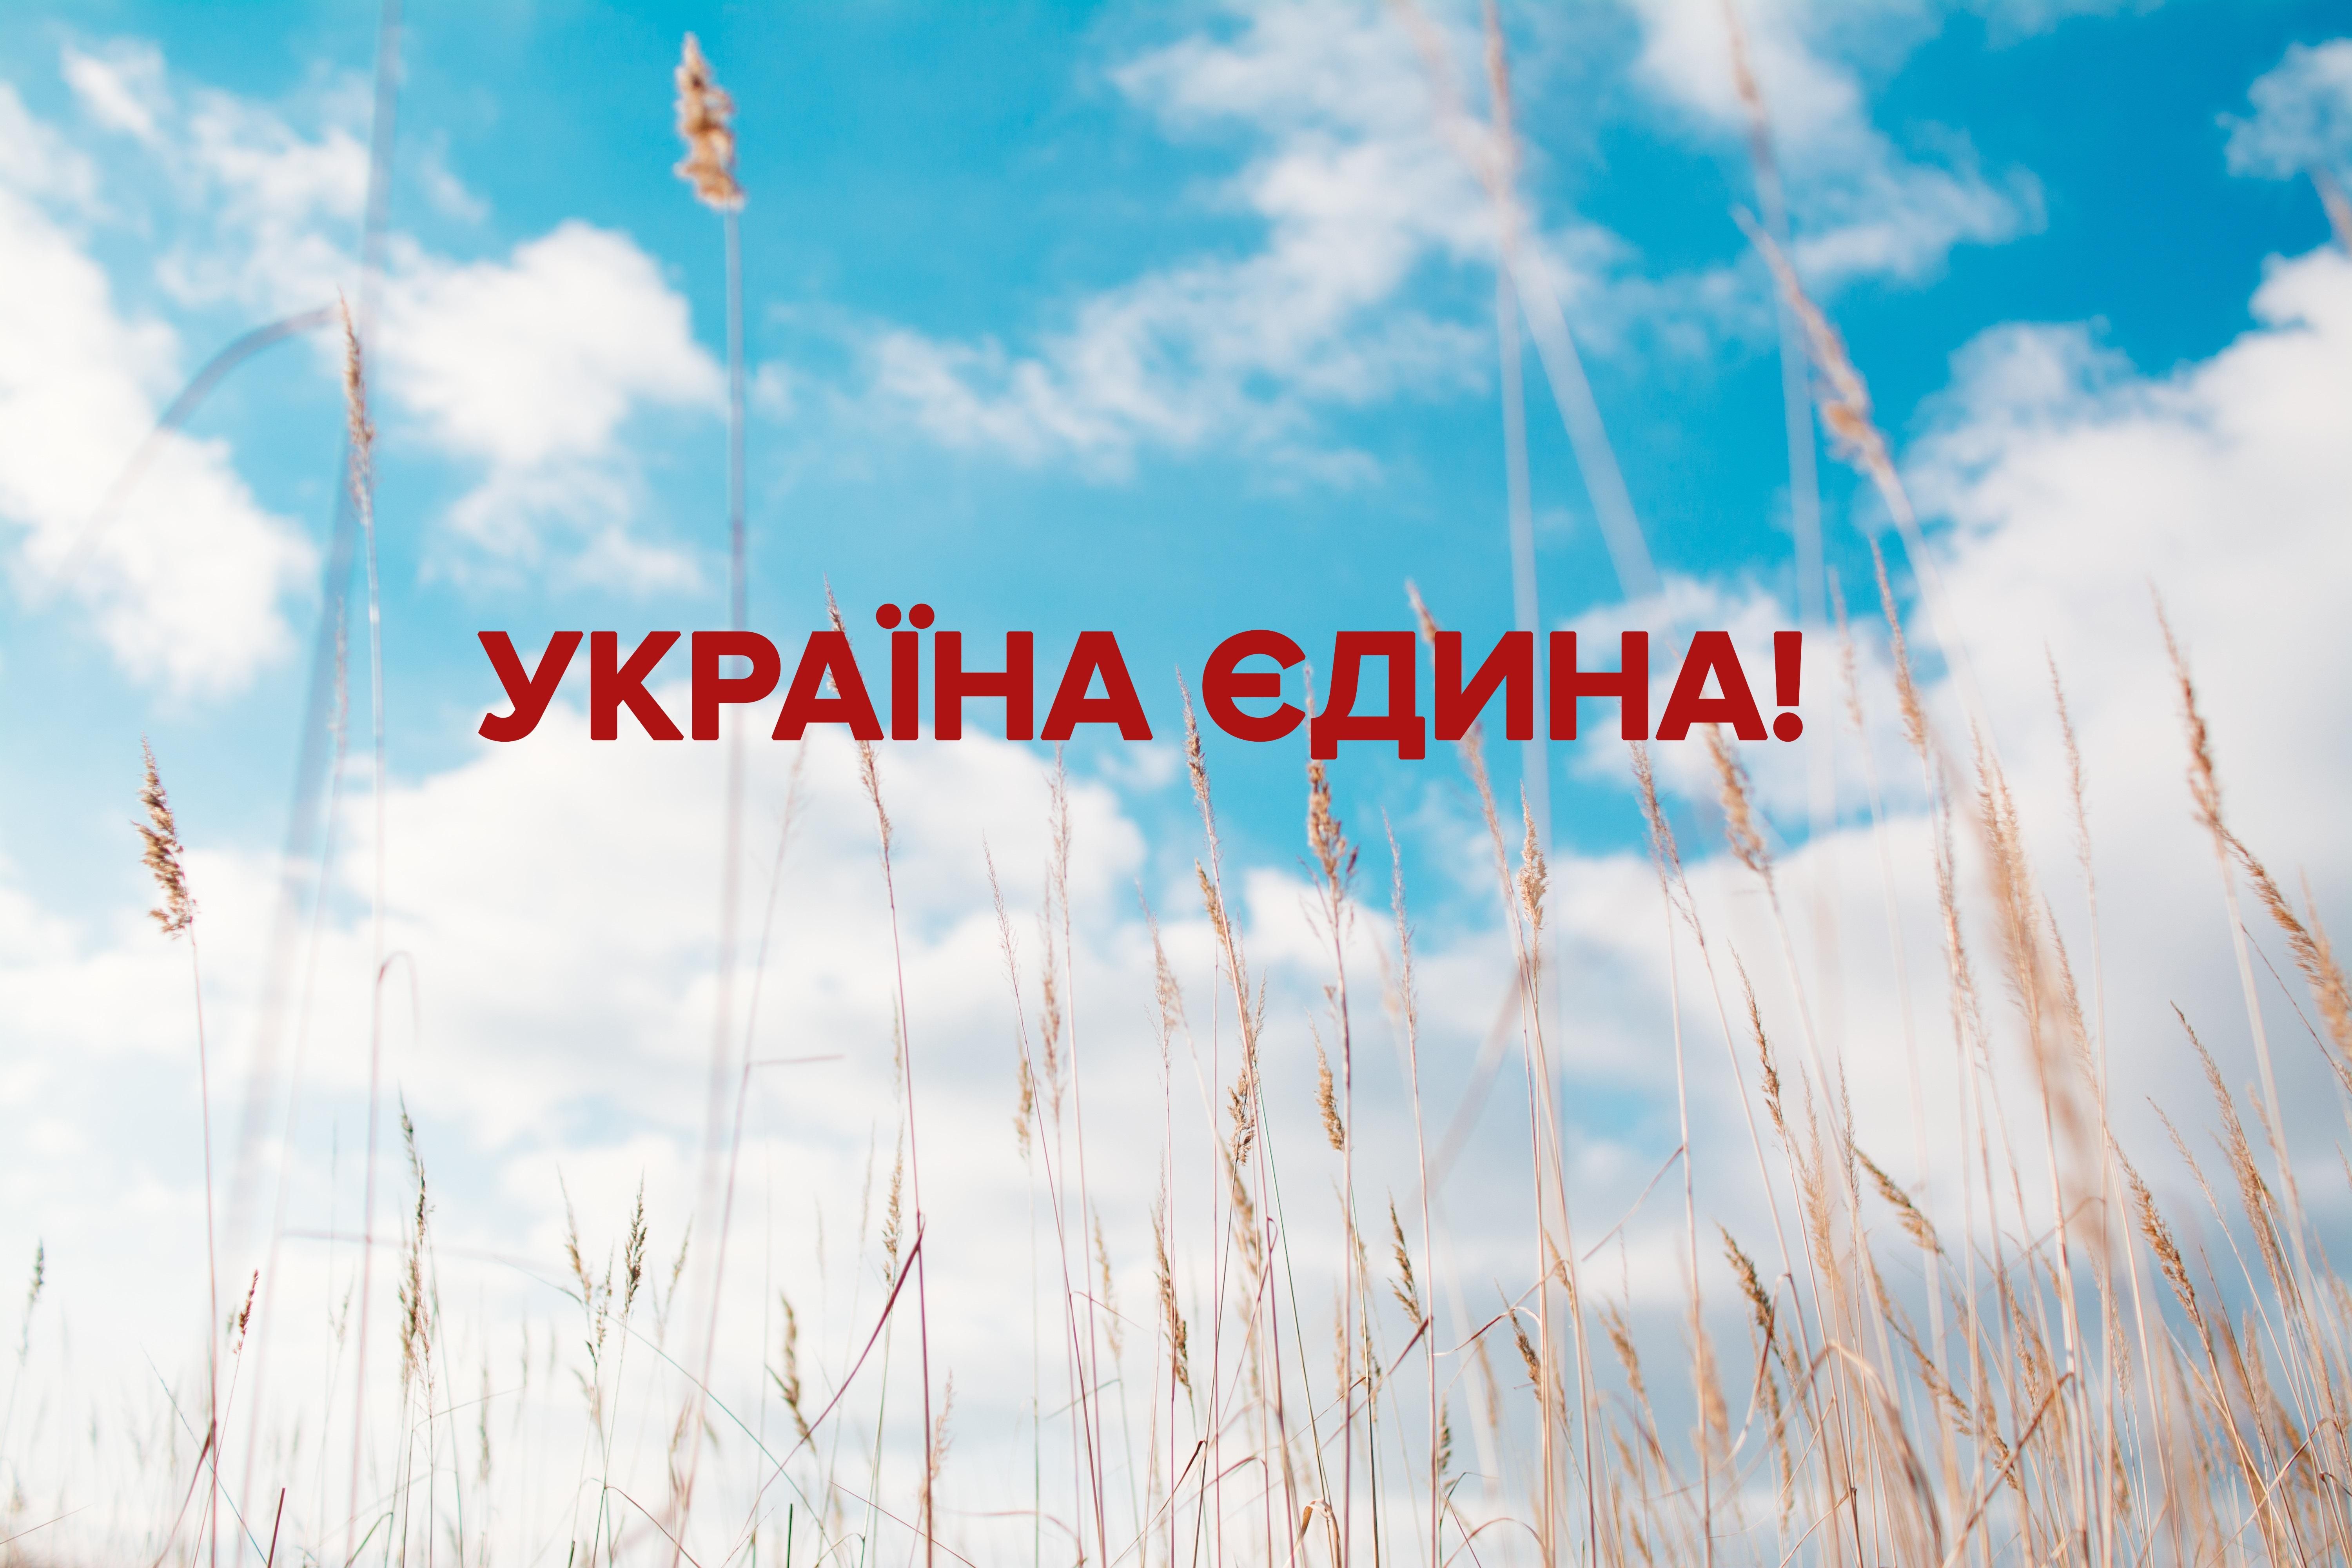 Привітання з Днем Соборності України 2019 - вітання у прозі та віршах